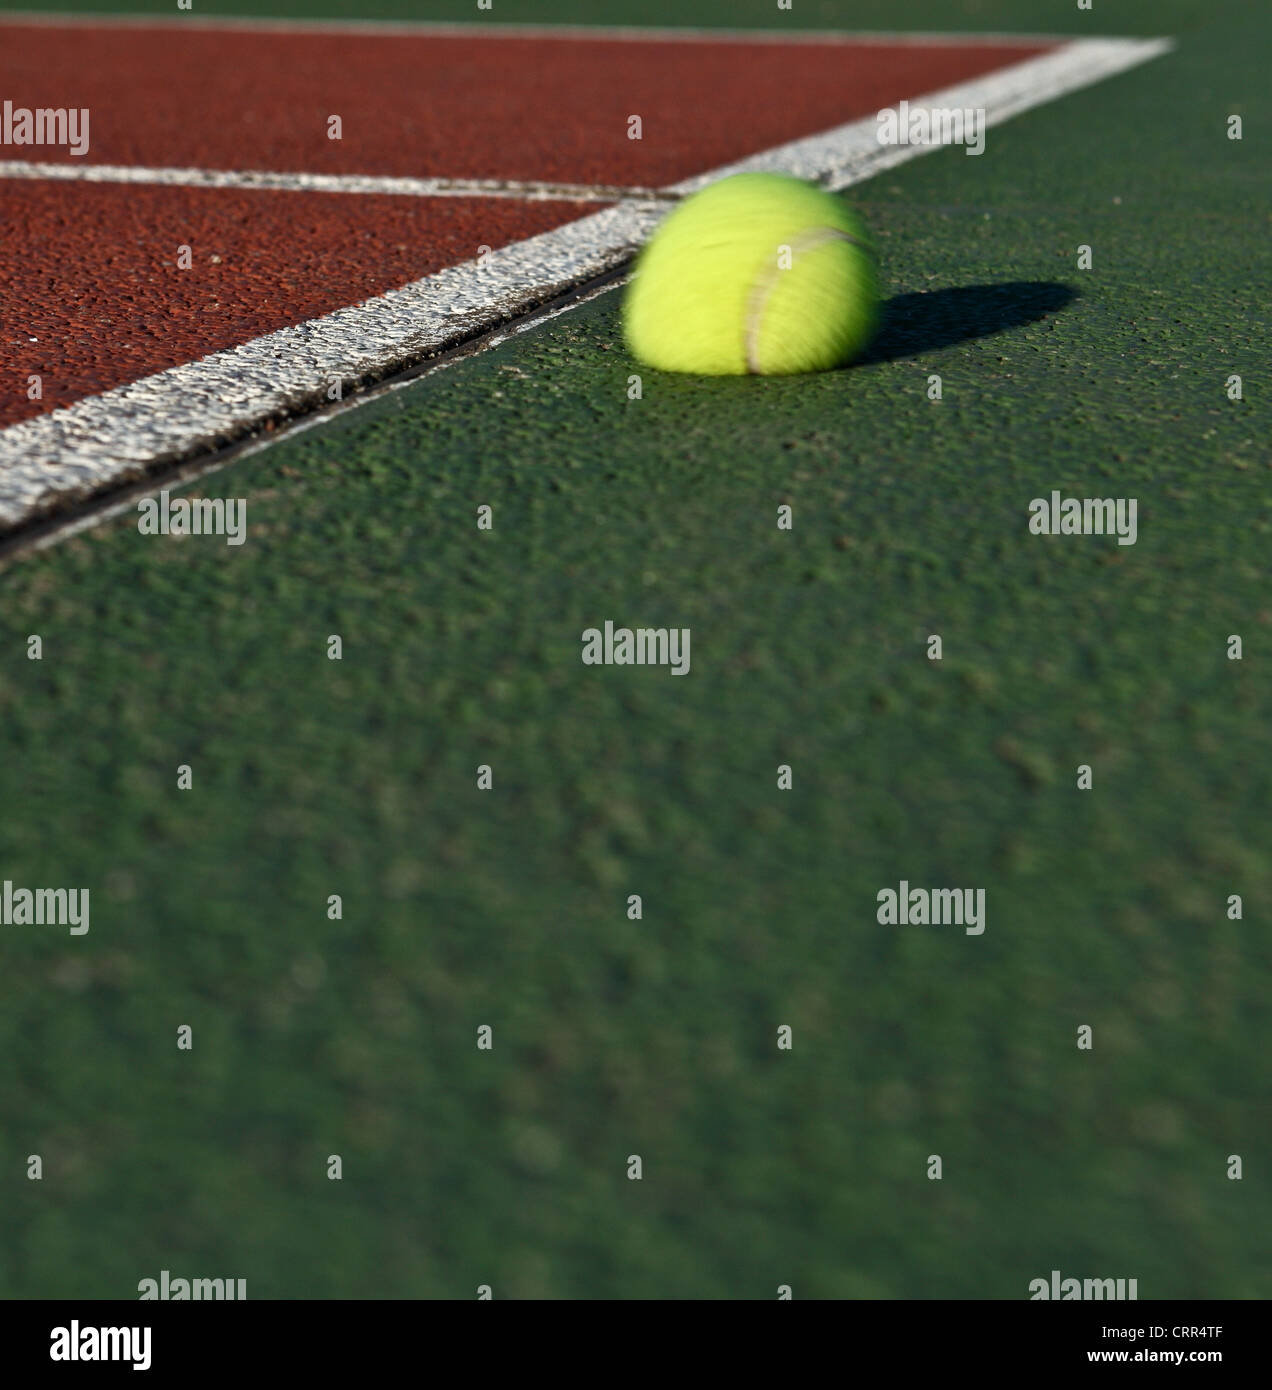 L'impatto - Tennis palla che rimbalza fuori del campo da tennis Foto stock  - Alamy